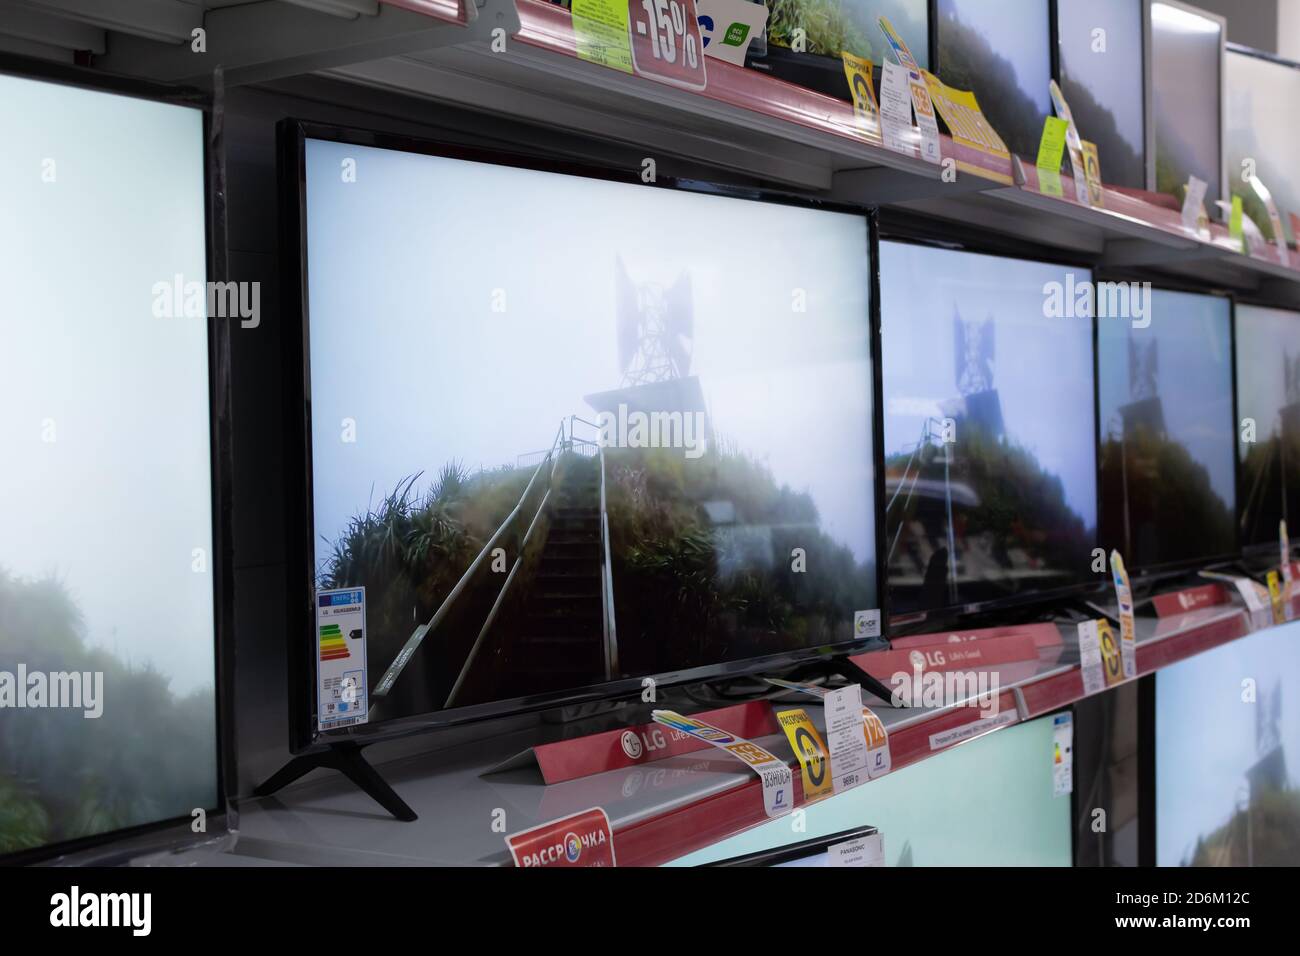 Tiraspol, Moldova - January 19, 2019: Wall of LCD Televisions at Store in Tiraspol, Moldova. Stock Photo